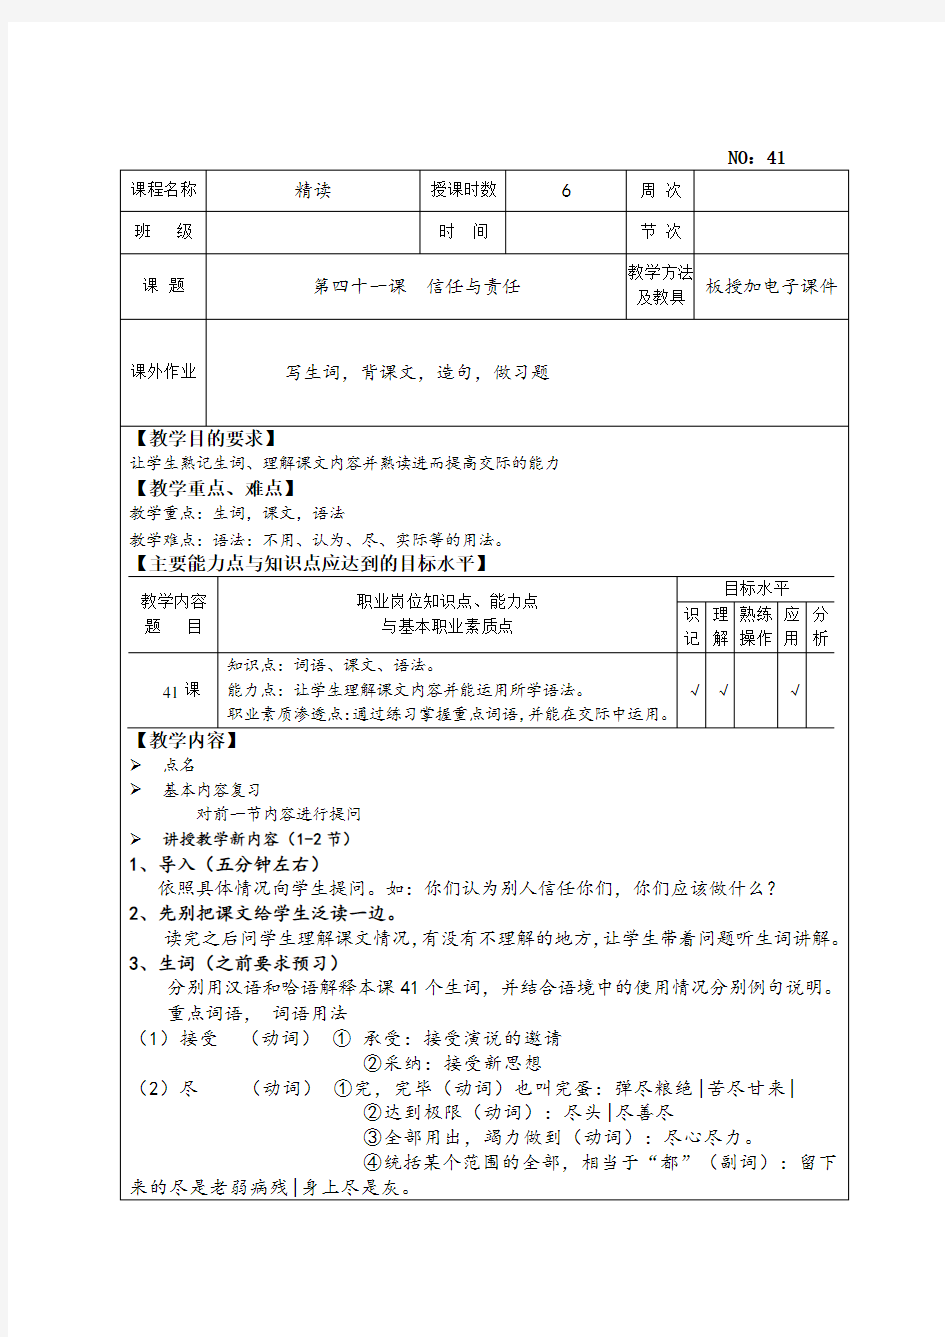 初级汉语教程第三册教案41-60课2017版